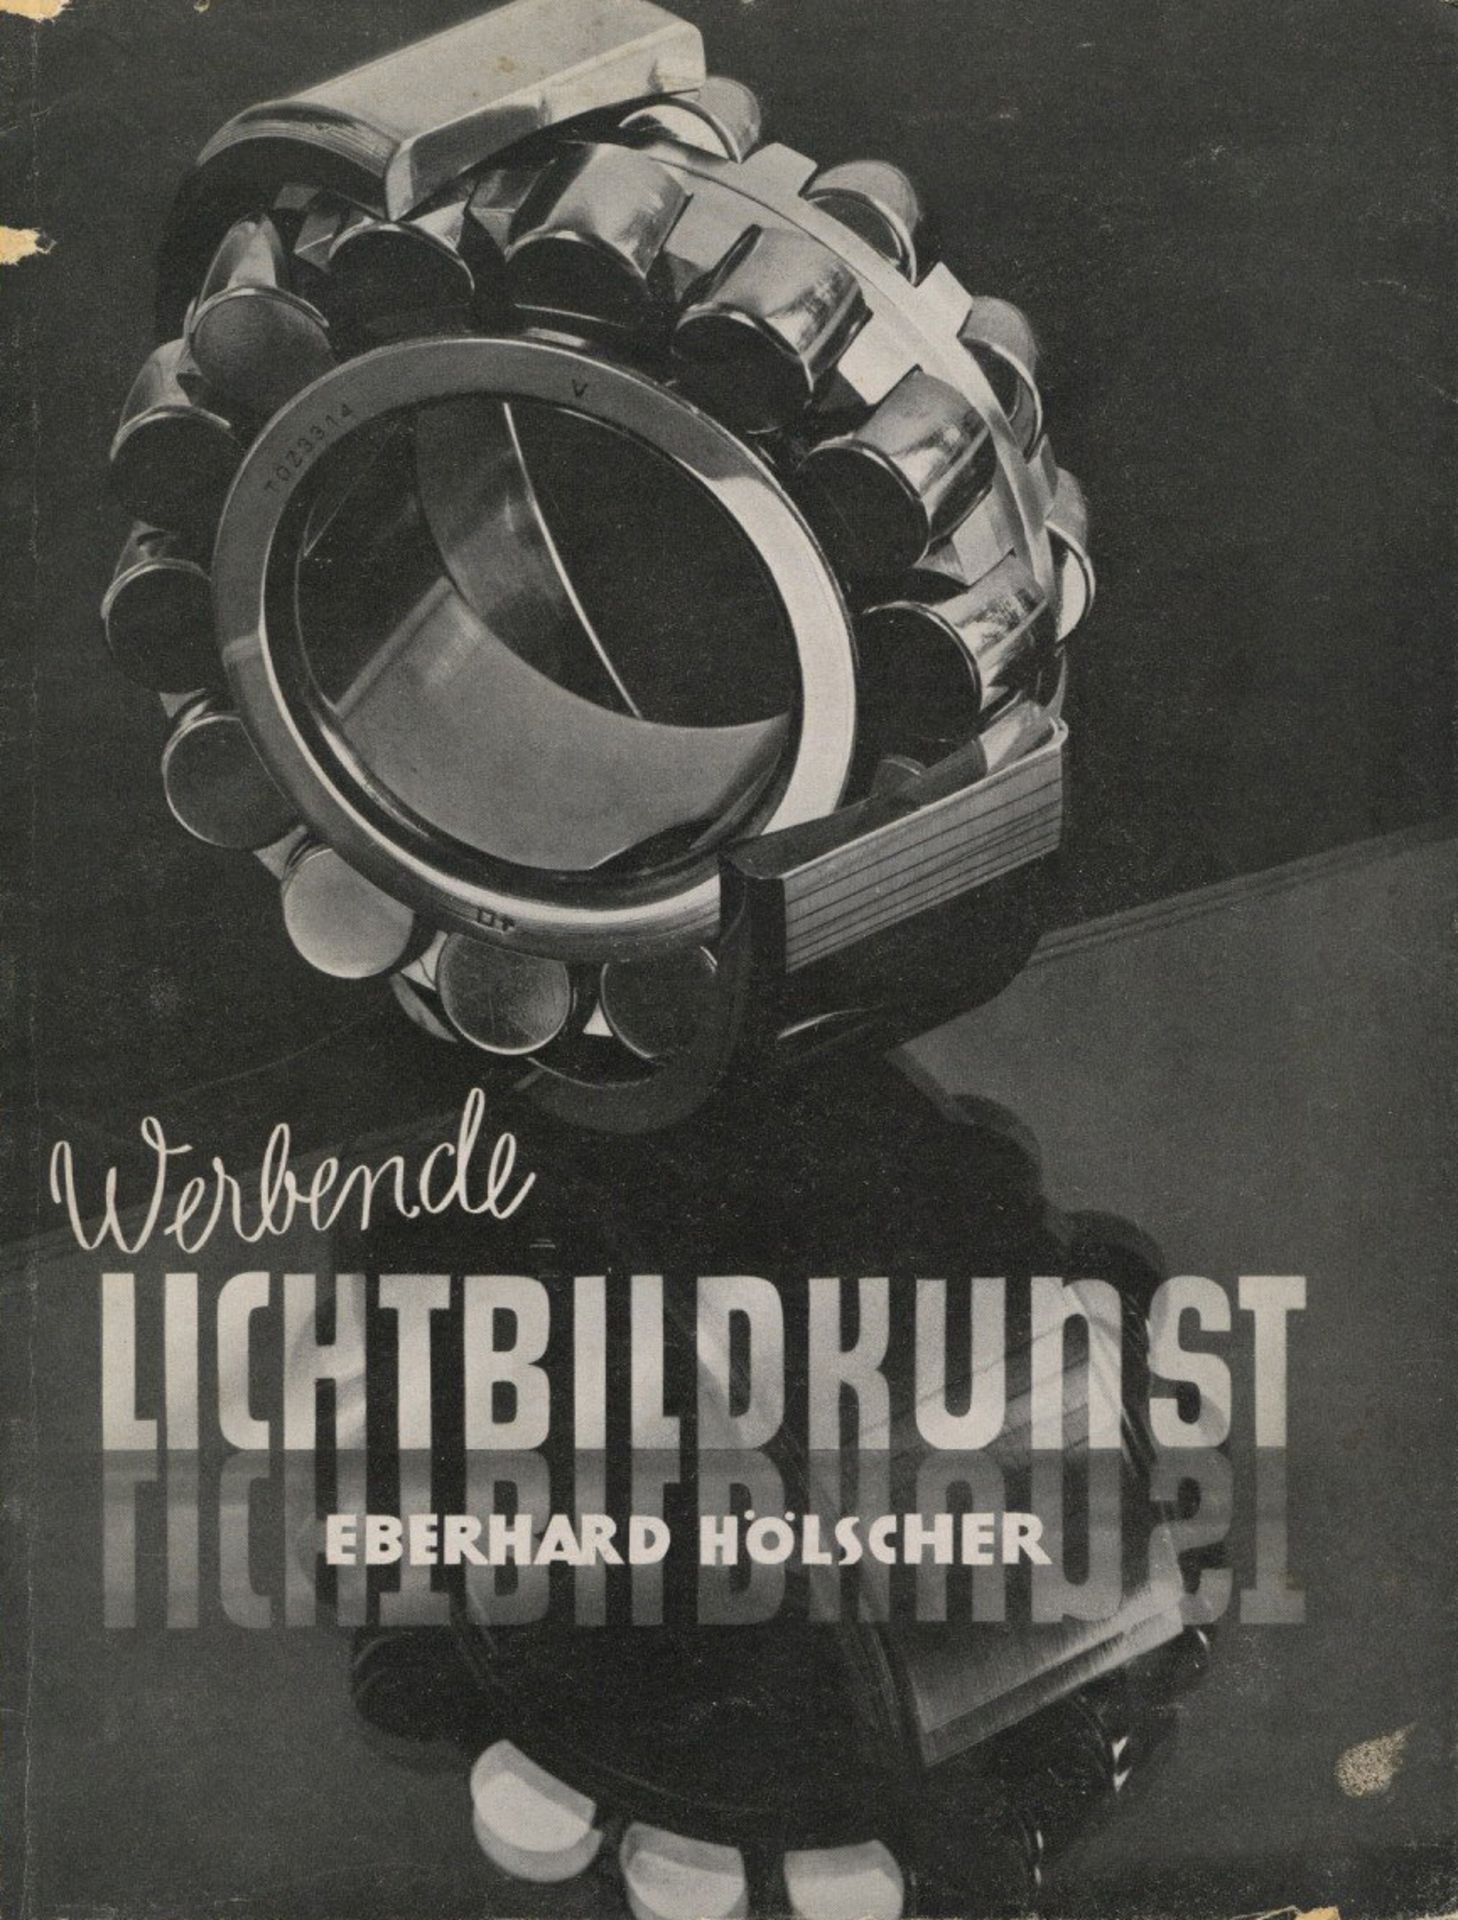 Fotographie Werbende Lichtbildkunst eine Schrift über Werbefotografie von Hölscher, Eberhard 1940,